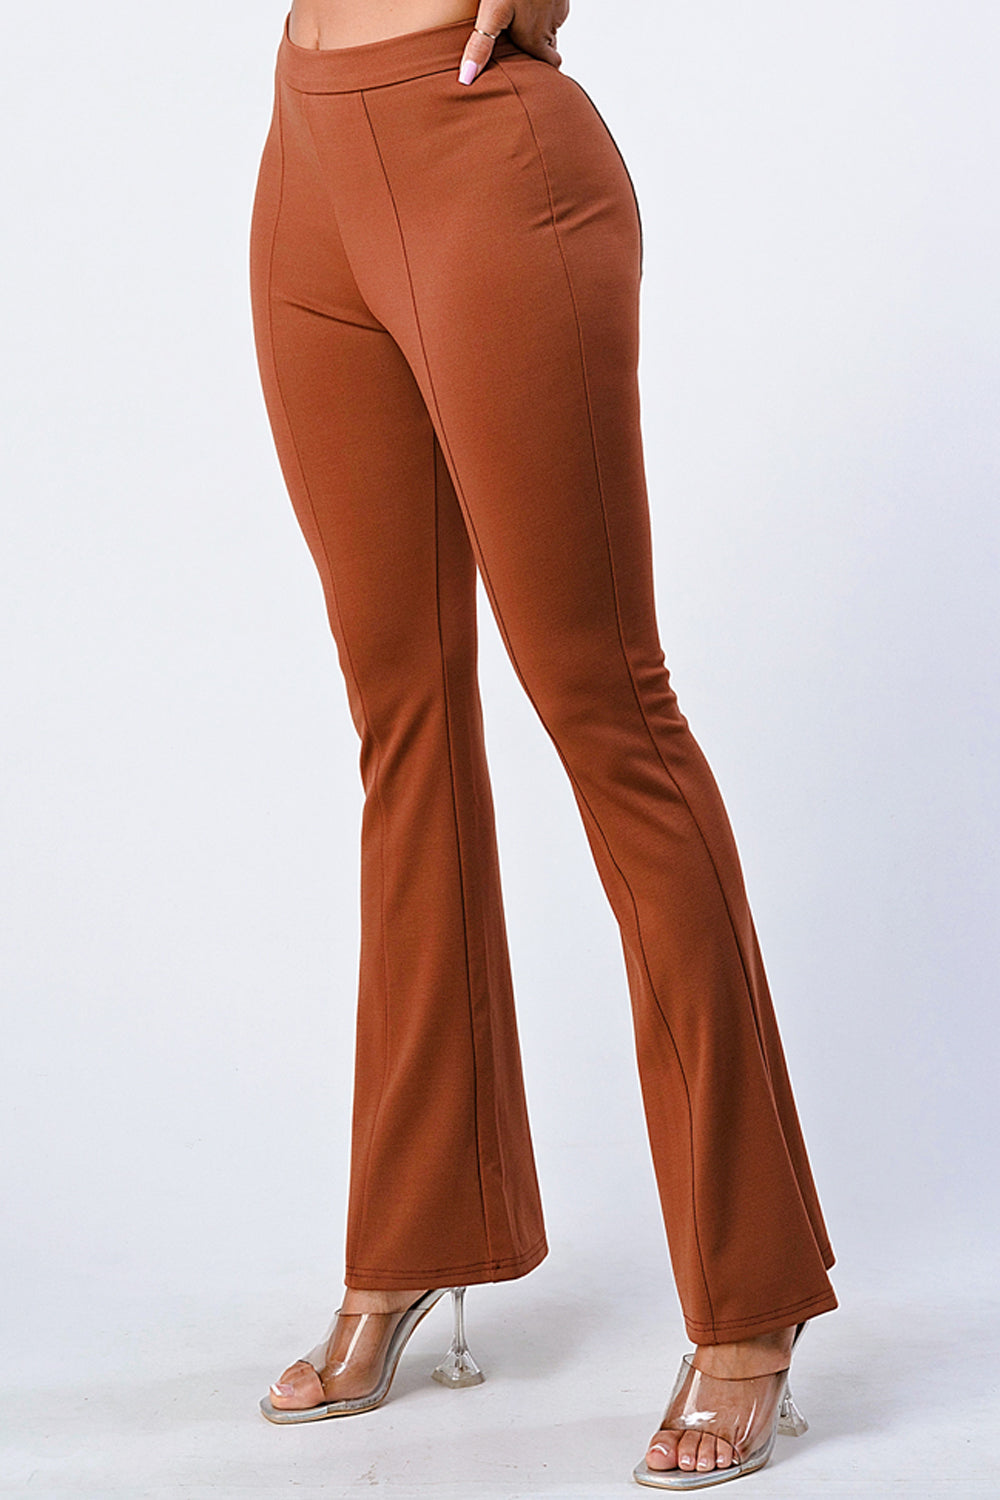 Katalina Brown Flare Pants – Moreno's Wear